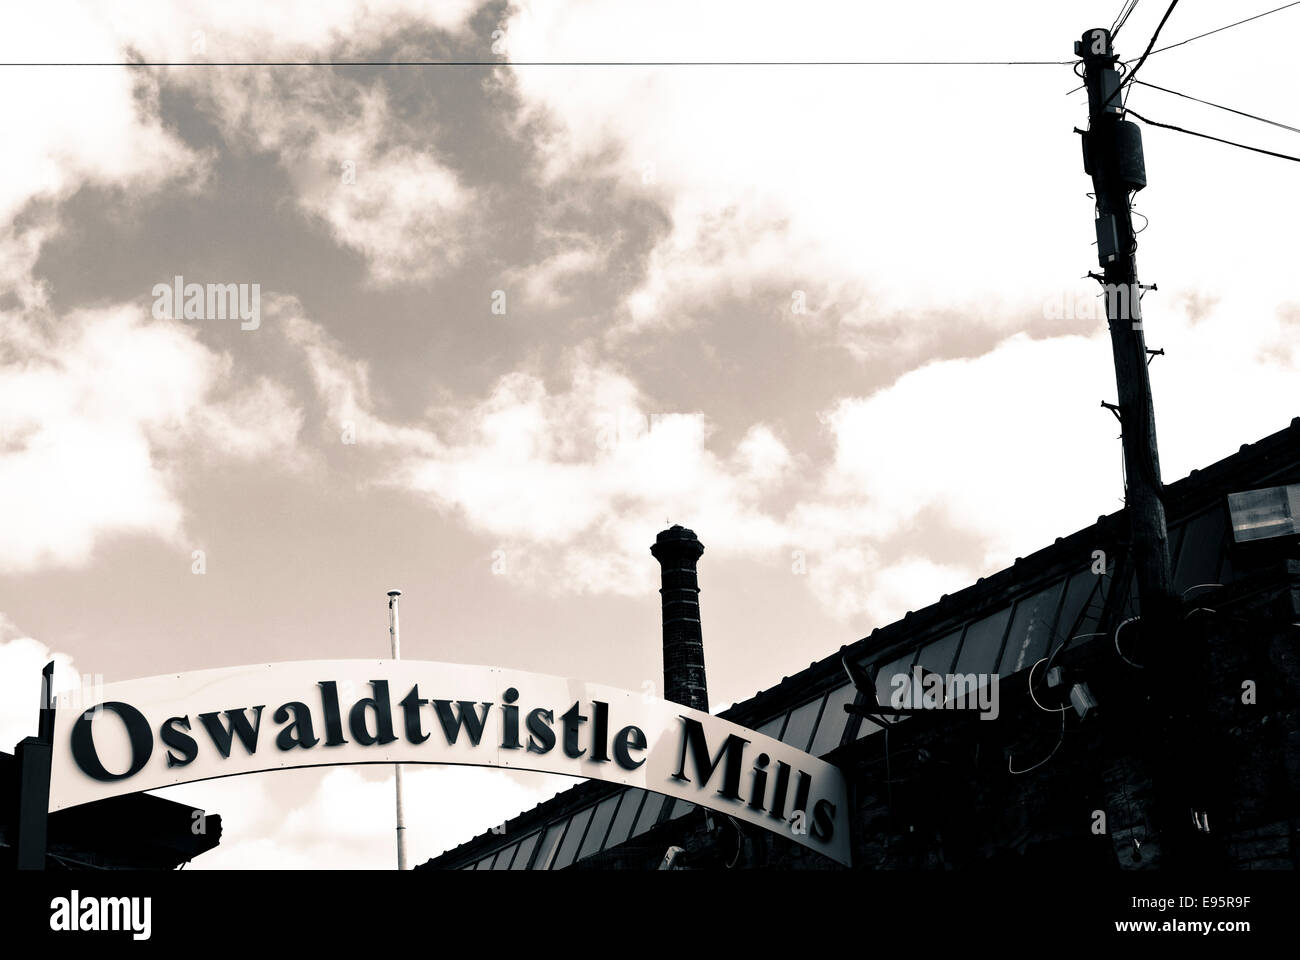 Oswaldtwistle Mills, Oswaldtwistle , Lancashire, Uk Stock Photo